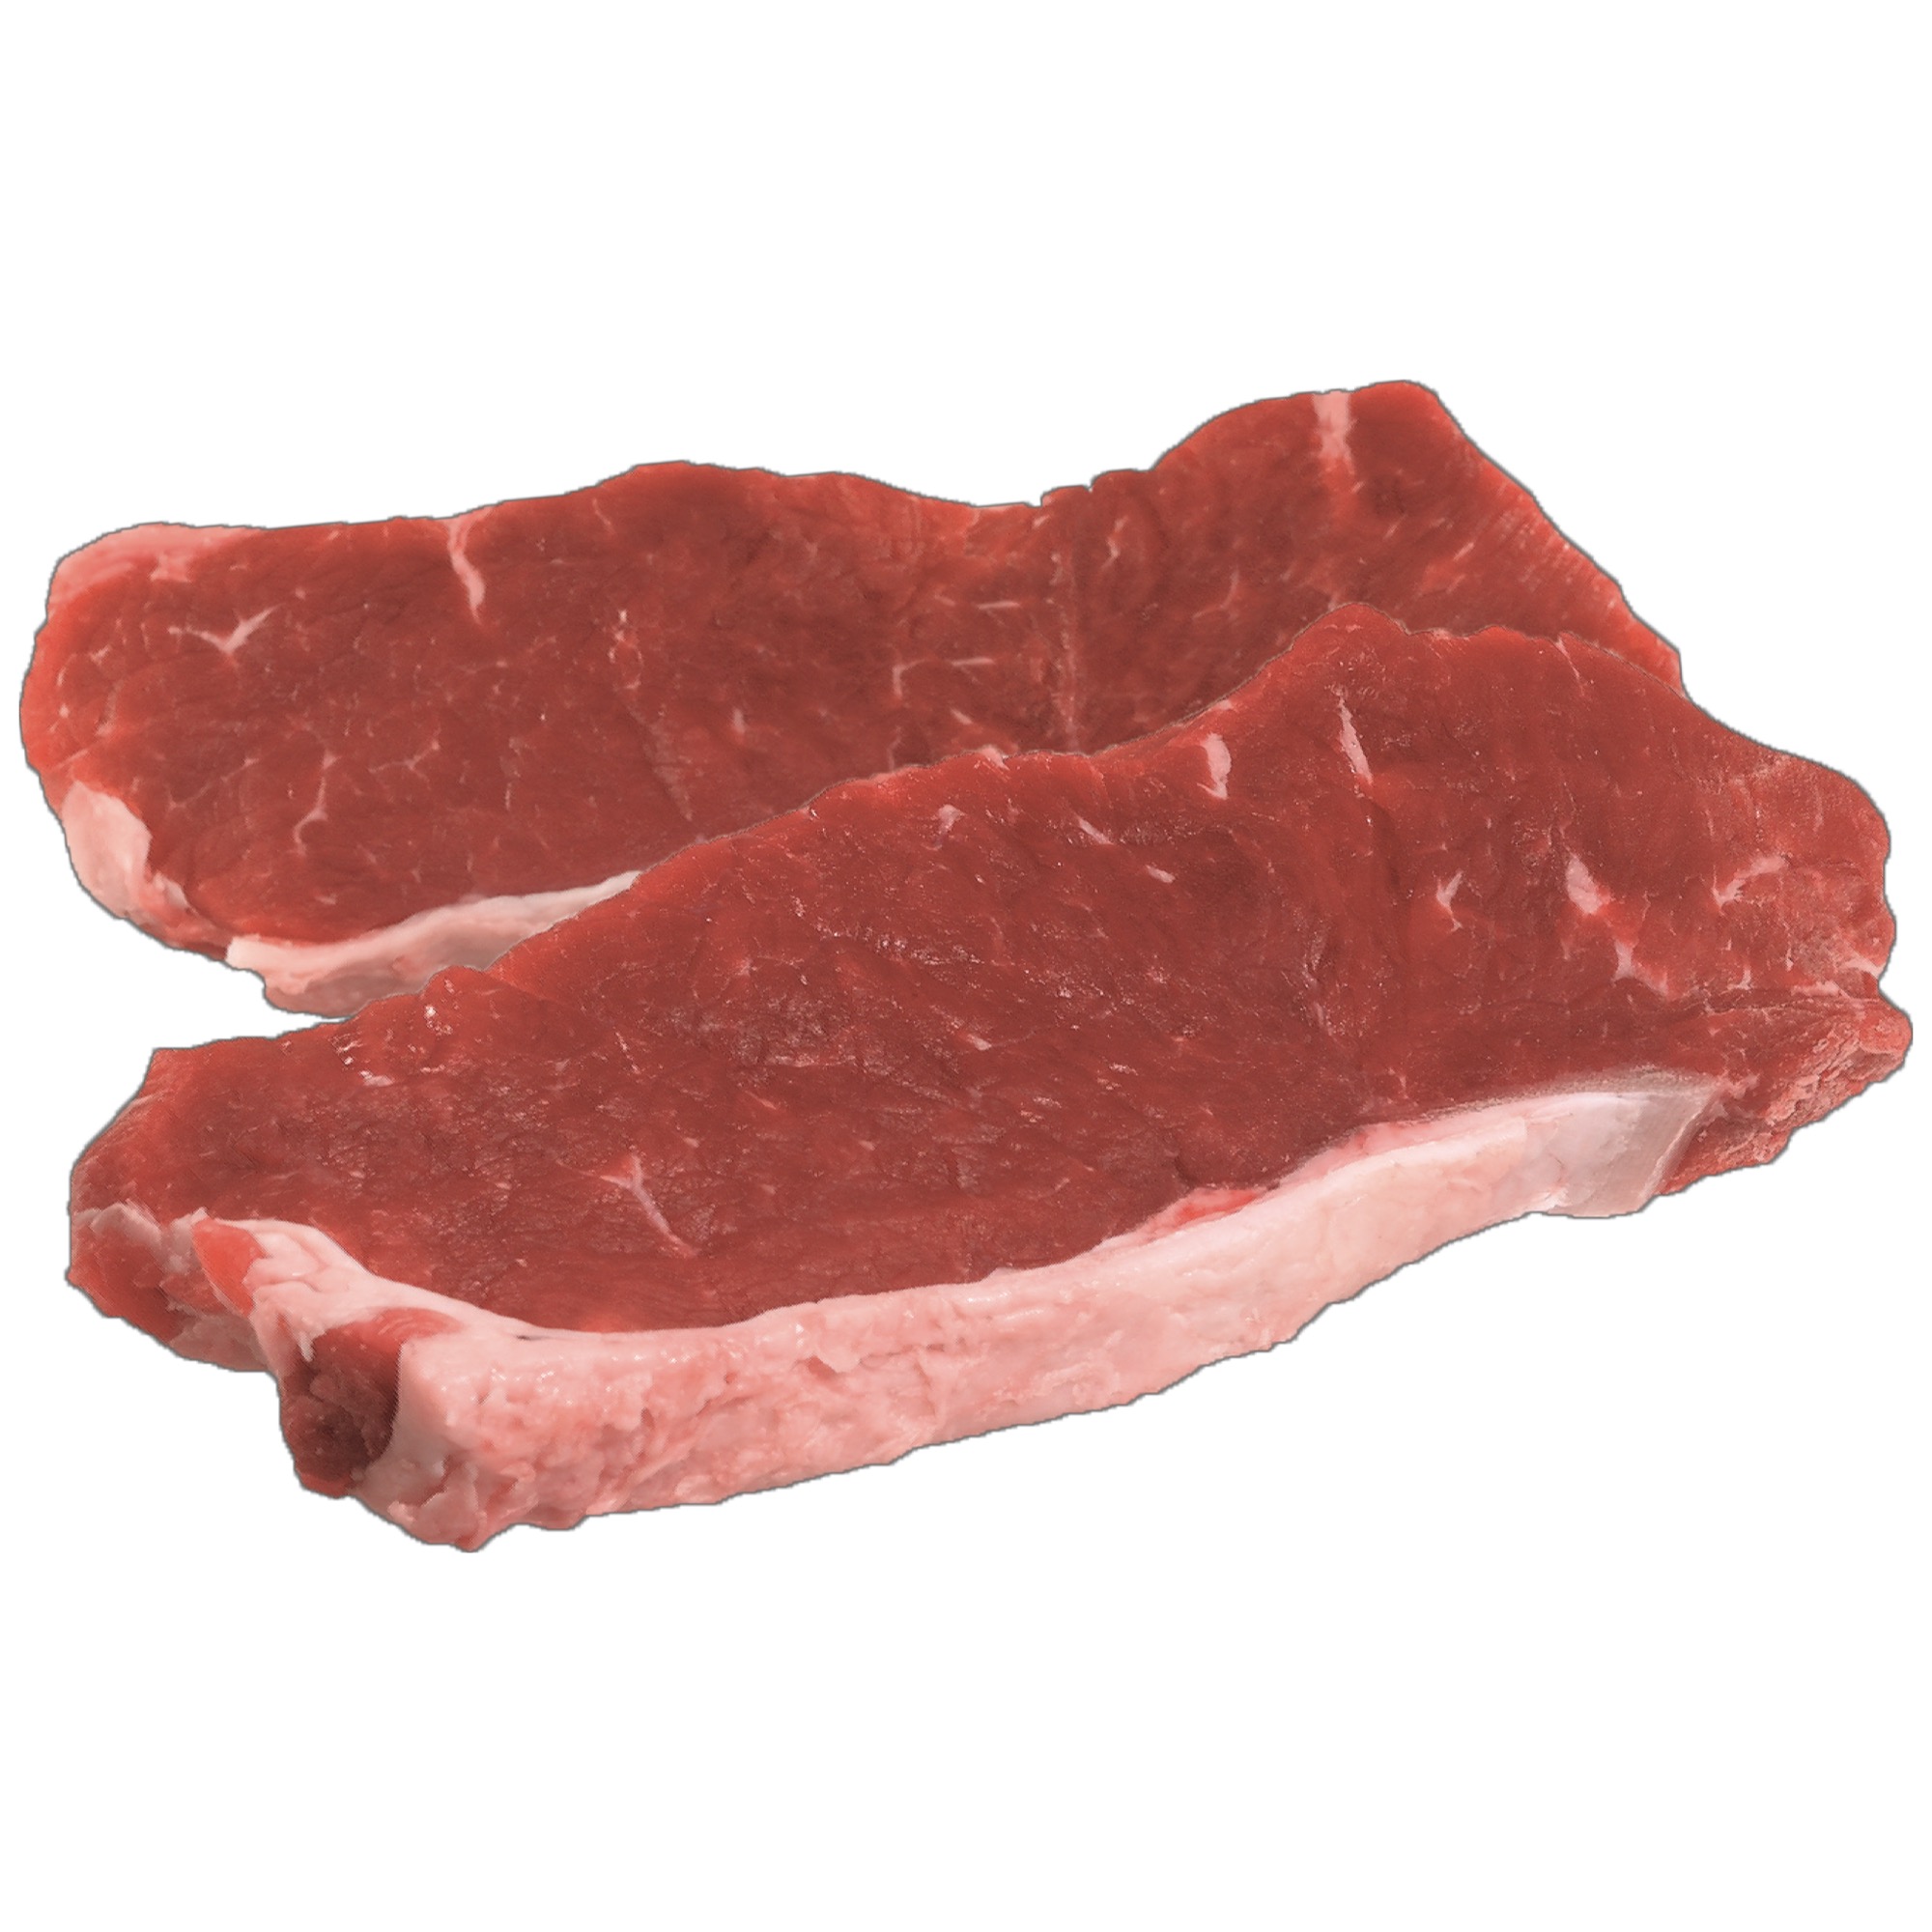 Hov. roštenka nízka steak cca.300g